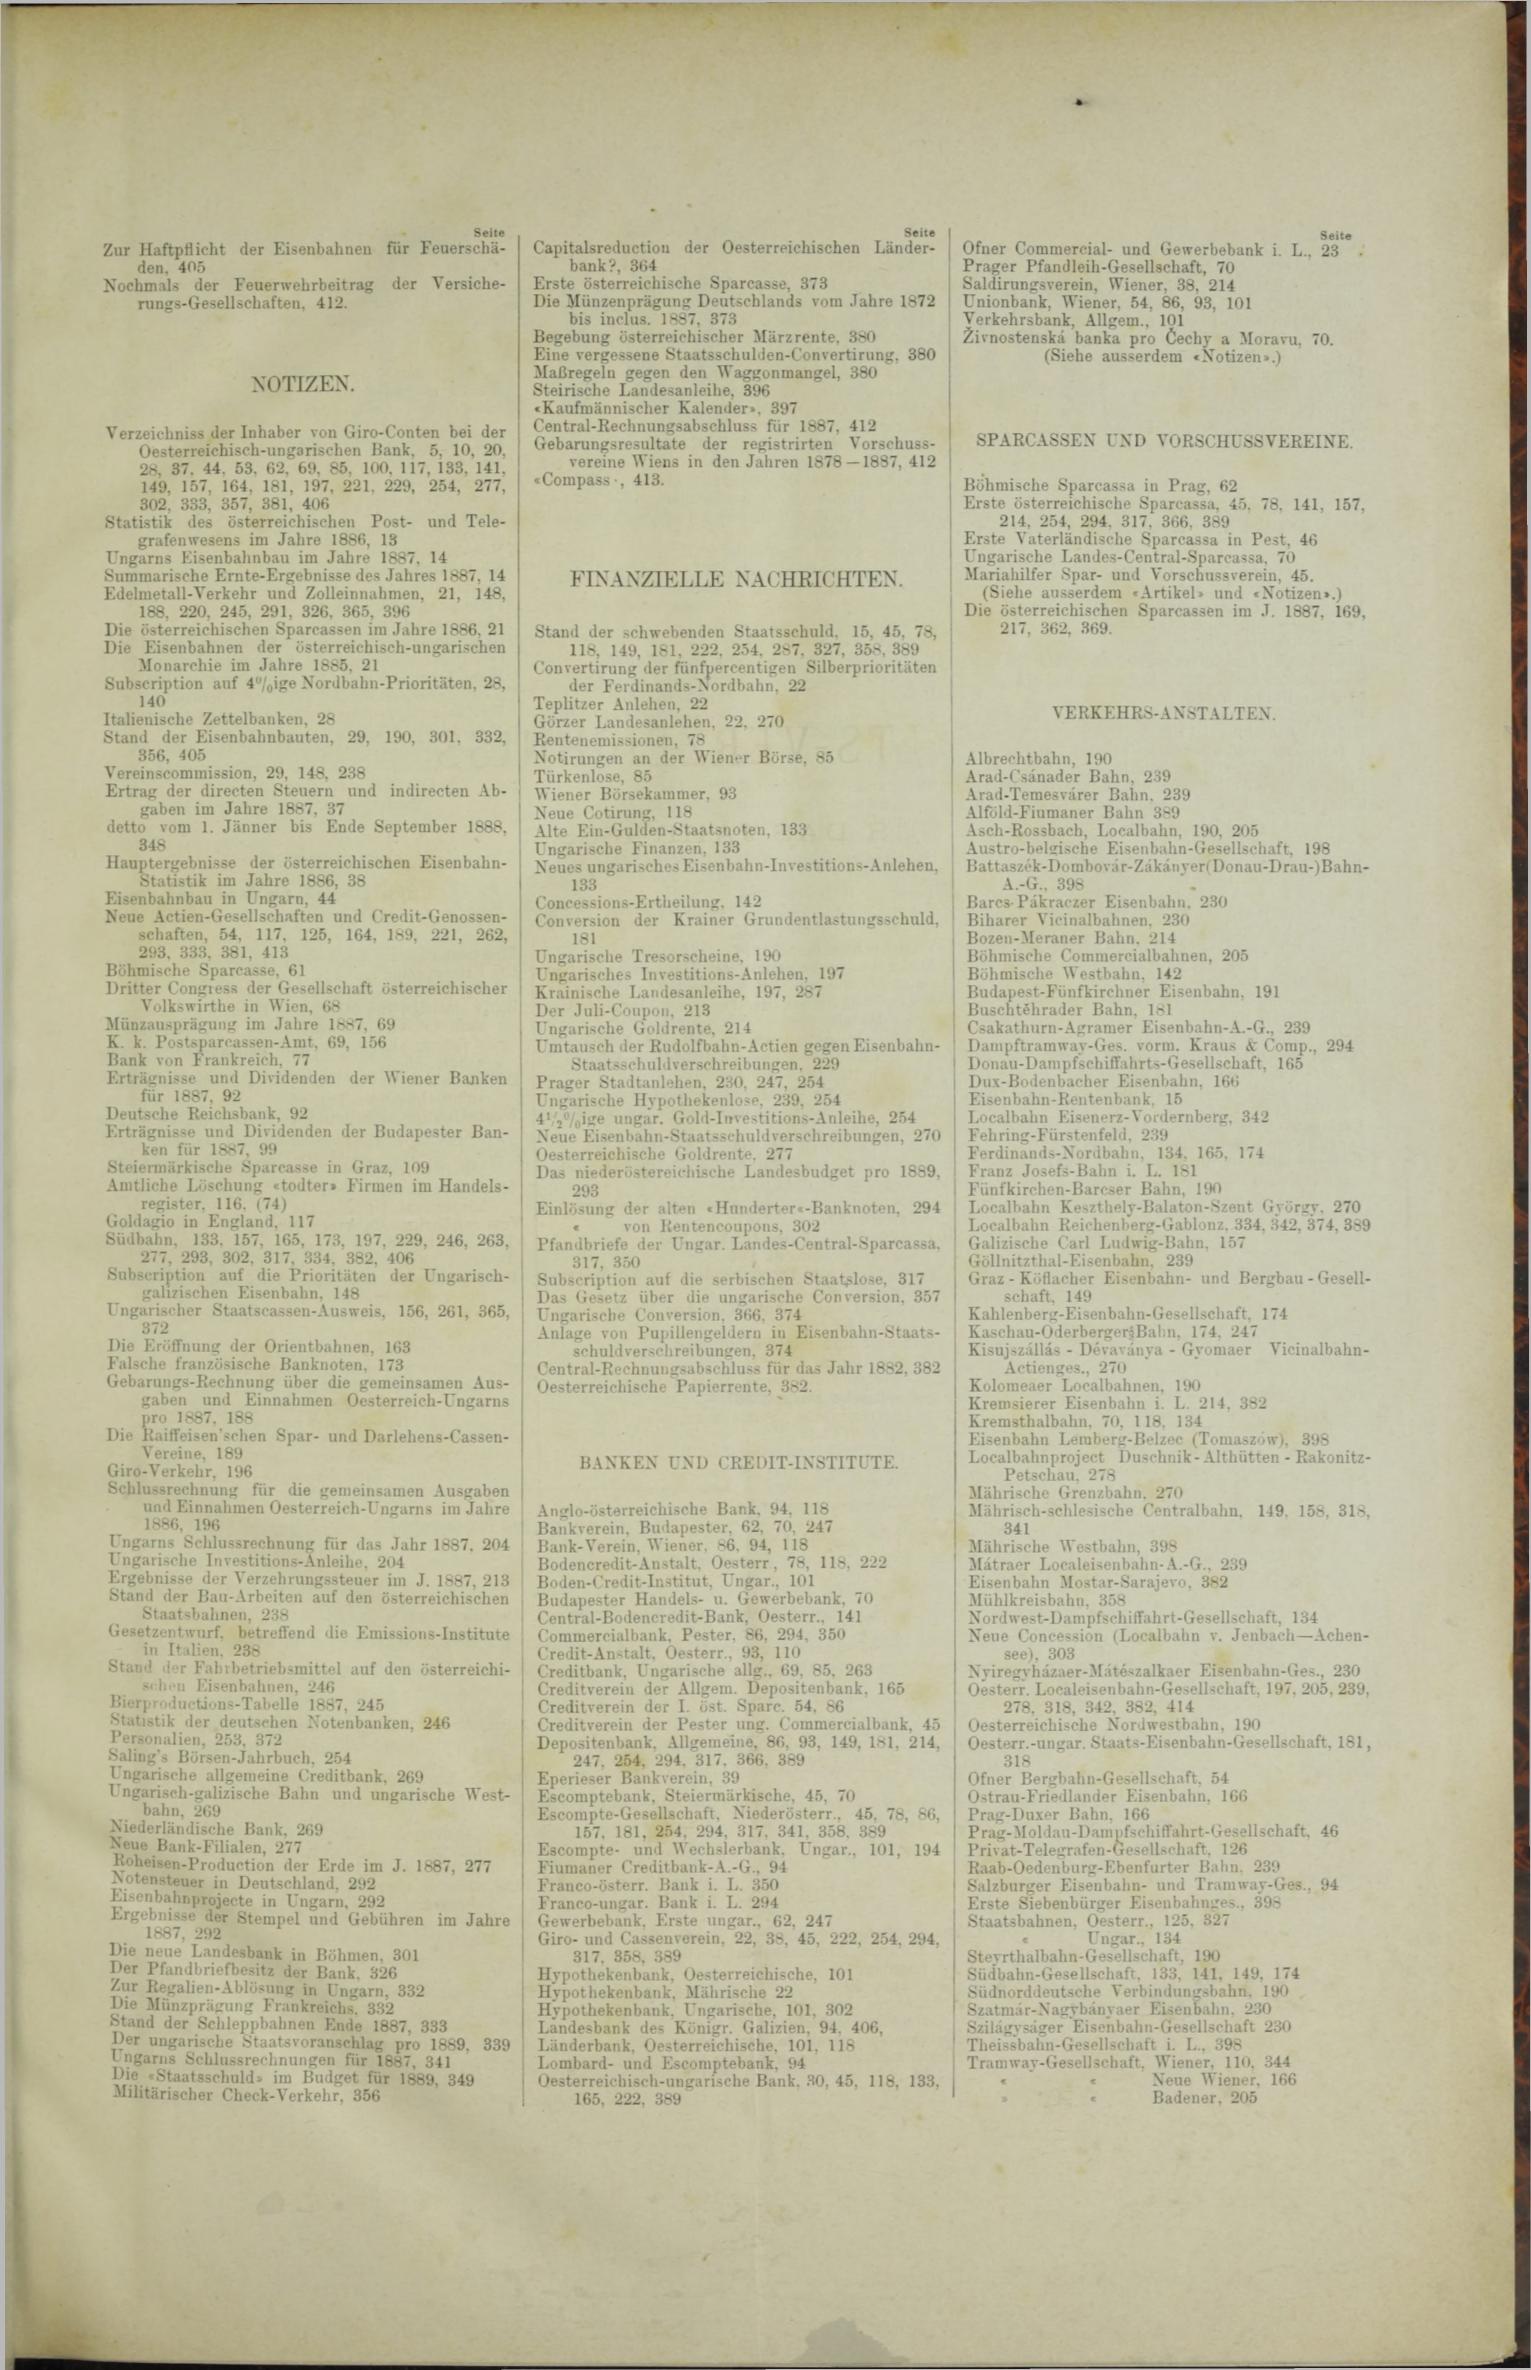 Der Tresor 24.05.1888 - Seite 11